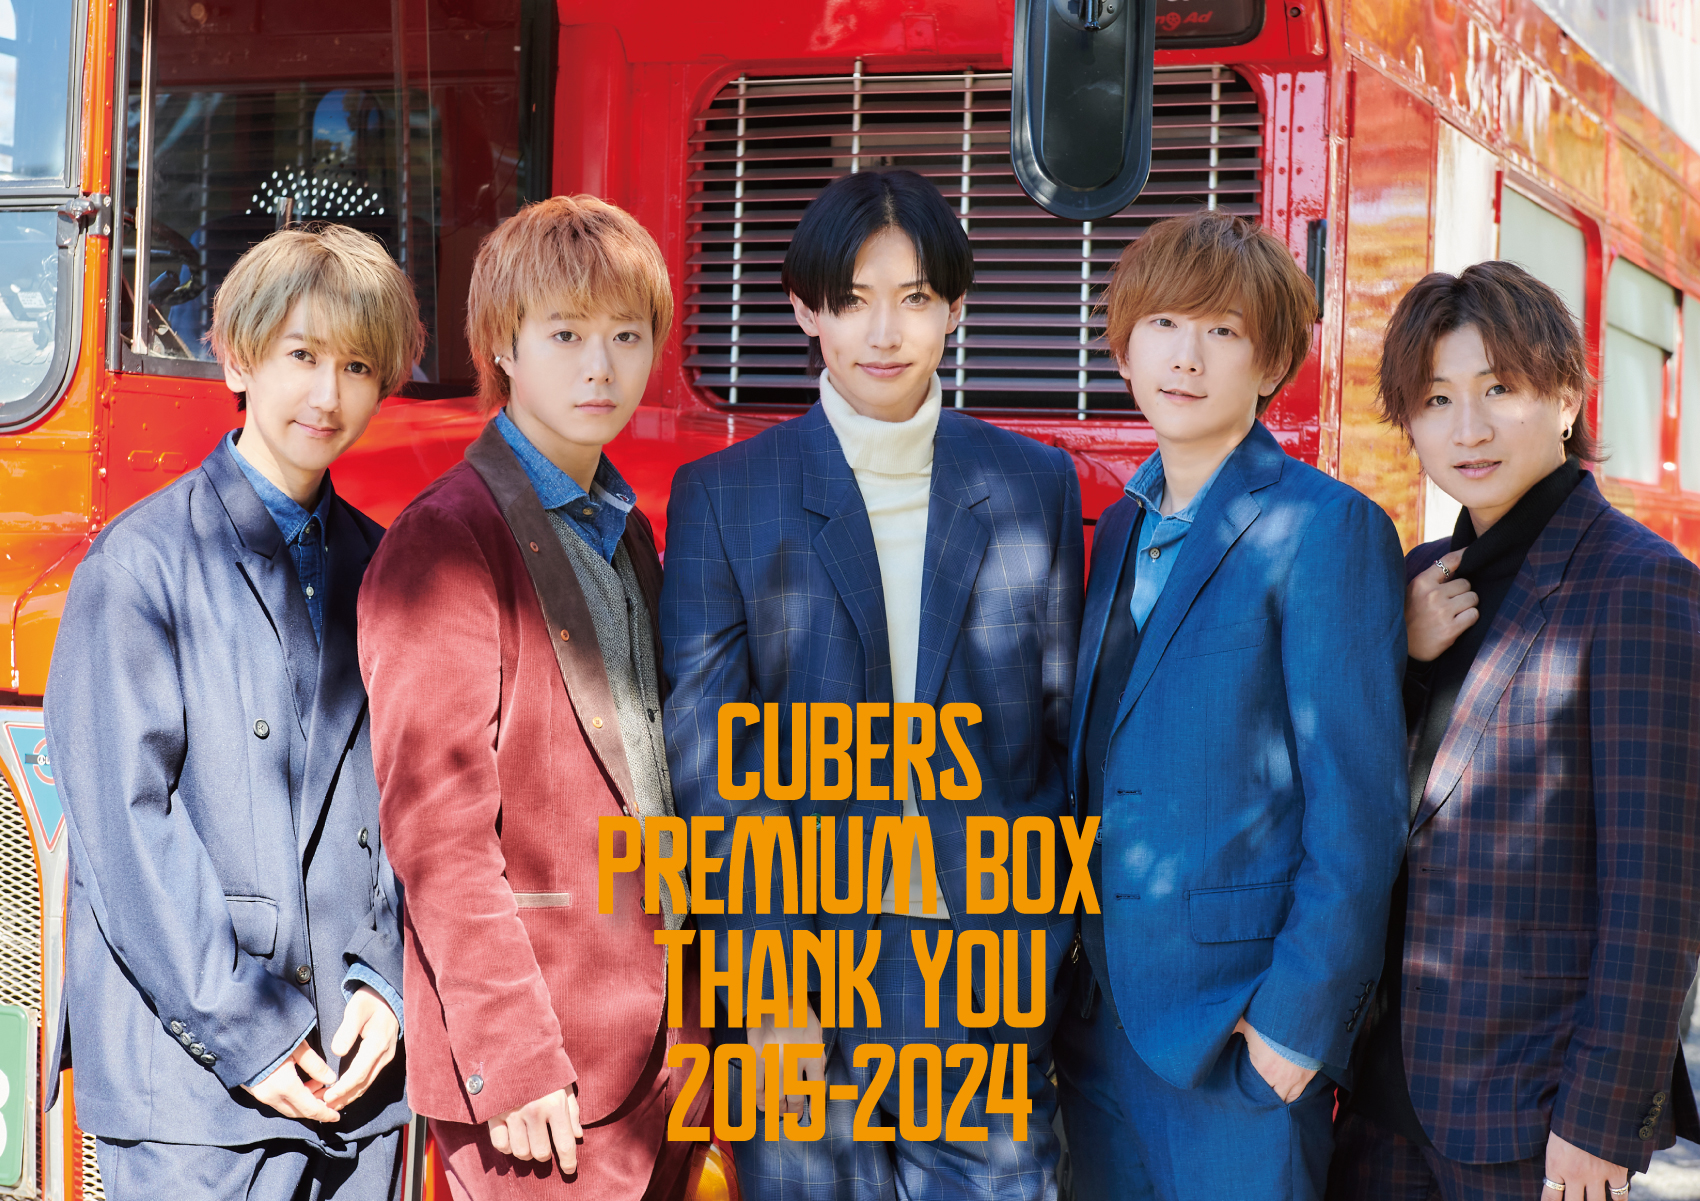 【お知らせ】「CUBERS PREMIUM BOX THANK YOU 2015-2024」納期遅延のお詫び